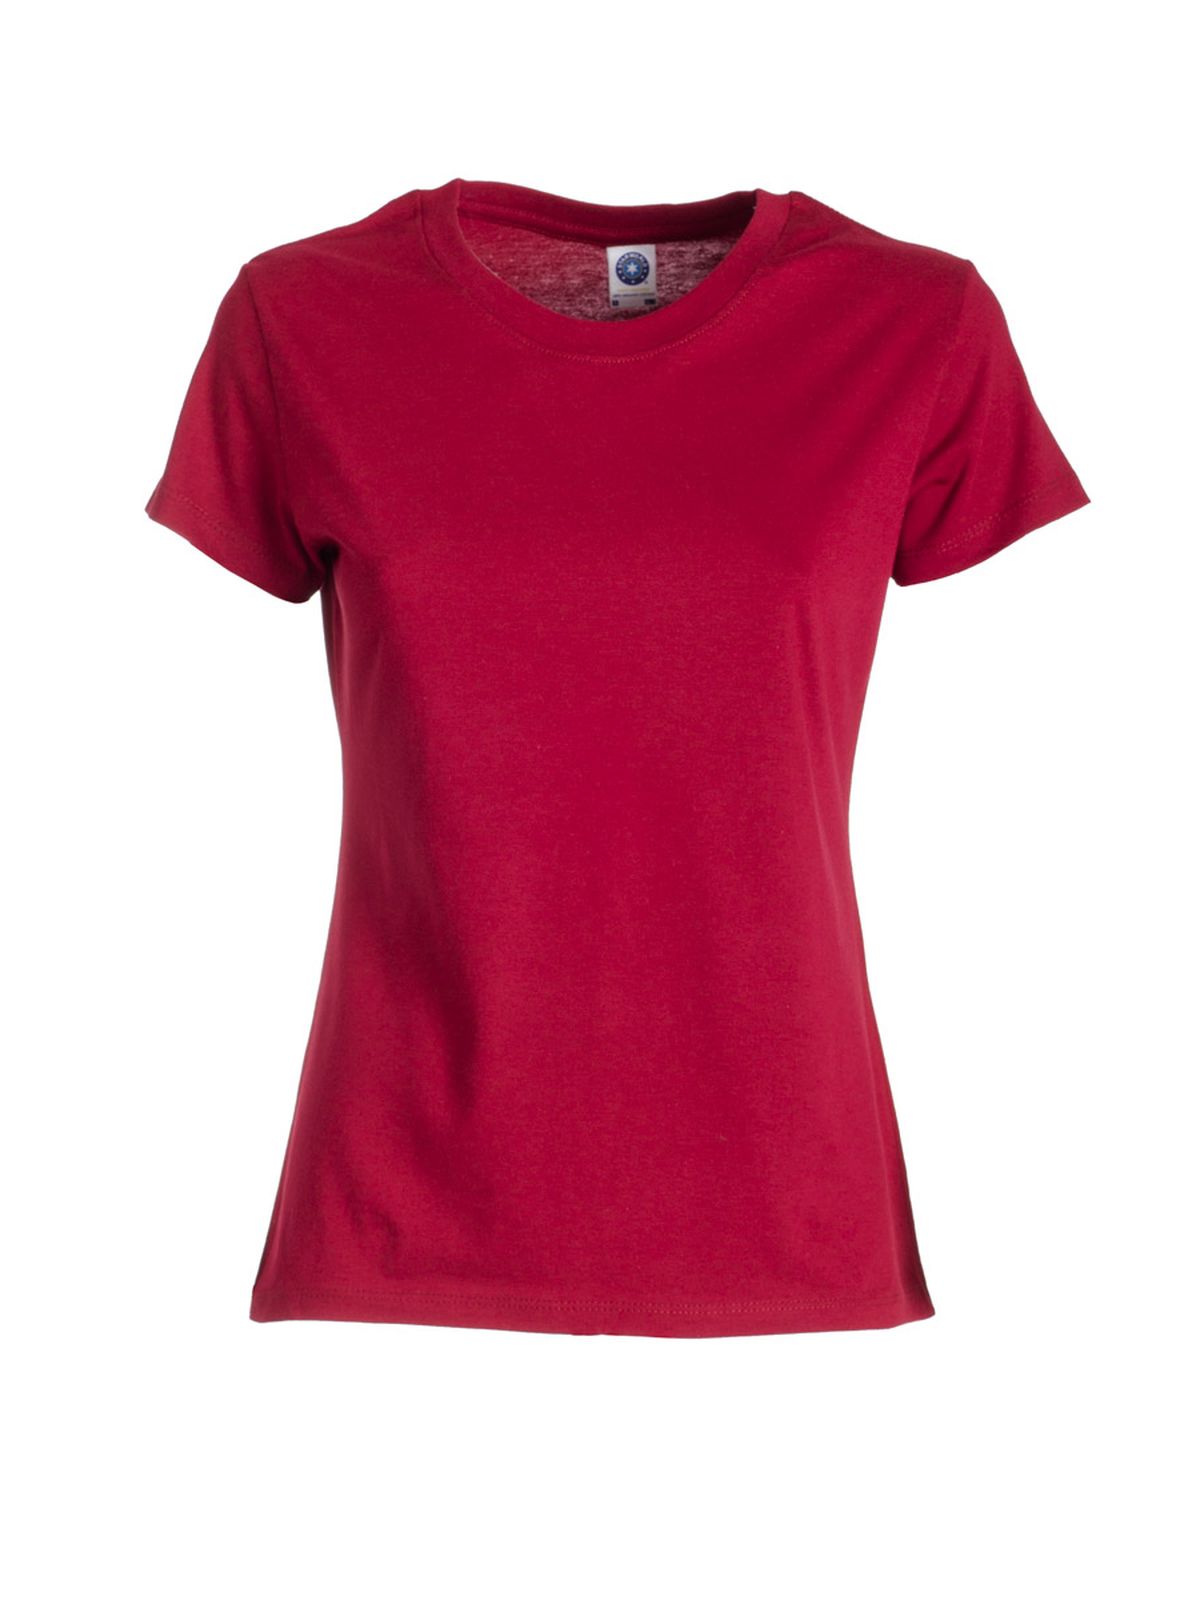 gold-label-ladies-retail-t-shirt-cardinal-red.webp